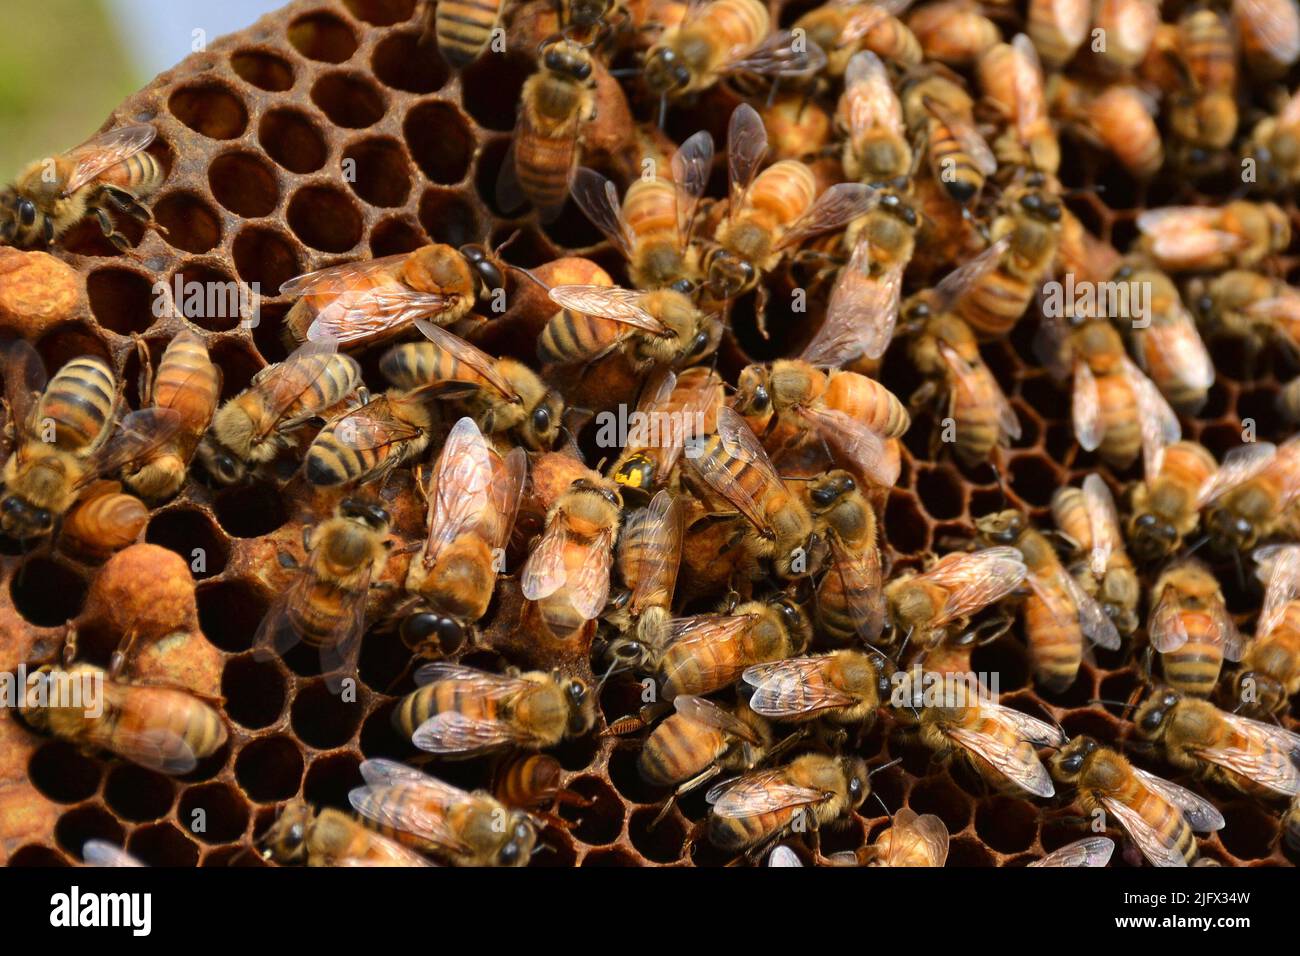 L'abeille avec des marques jaunes au centre de cette image est la reine de cette ruche. Il n'y en a généralement qu'une dans une ruche, que les abeilles travailleuses nourrissent, suivent et protègent. La société a besoin d'abeilles saines et d'autres insectes pour polliniser les cultures, mais les changements d'utilisation des terres qui réduisent l'abondance des fleurs peuvent affecter la santé et la pollinisation des abeilles. LES États DU Midwest AMÉRICAIN perdent des prairies indigènes et des terres de conservation qui ont traditionnellement fourni des fleurs abondantes aux pollinisateurs. L'USGS travaille en étroite collaboration avec les apiculteurs professionnels du Dakota du Nord pour évaluer sur quelles espèces végétales les abeilles fourraient et à quel moment. Crédit : USGS Banque D'Images